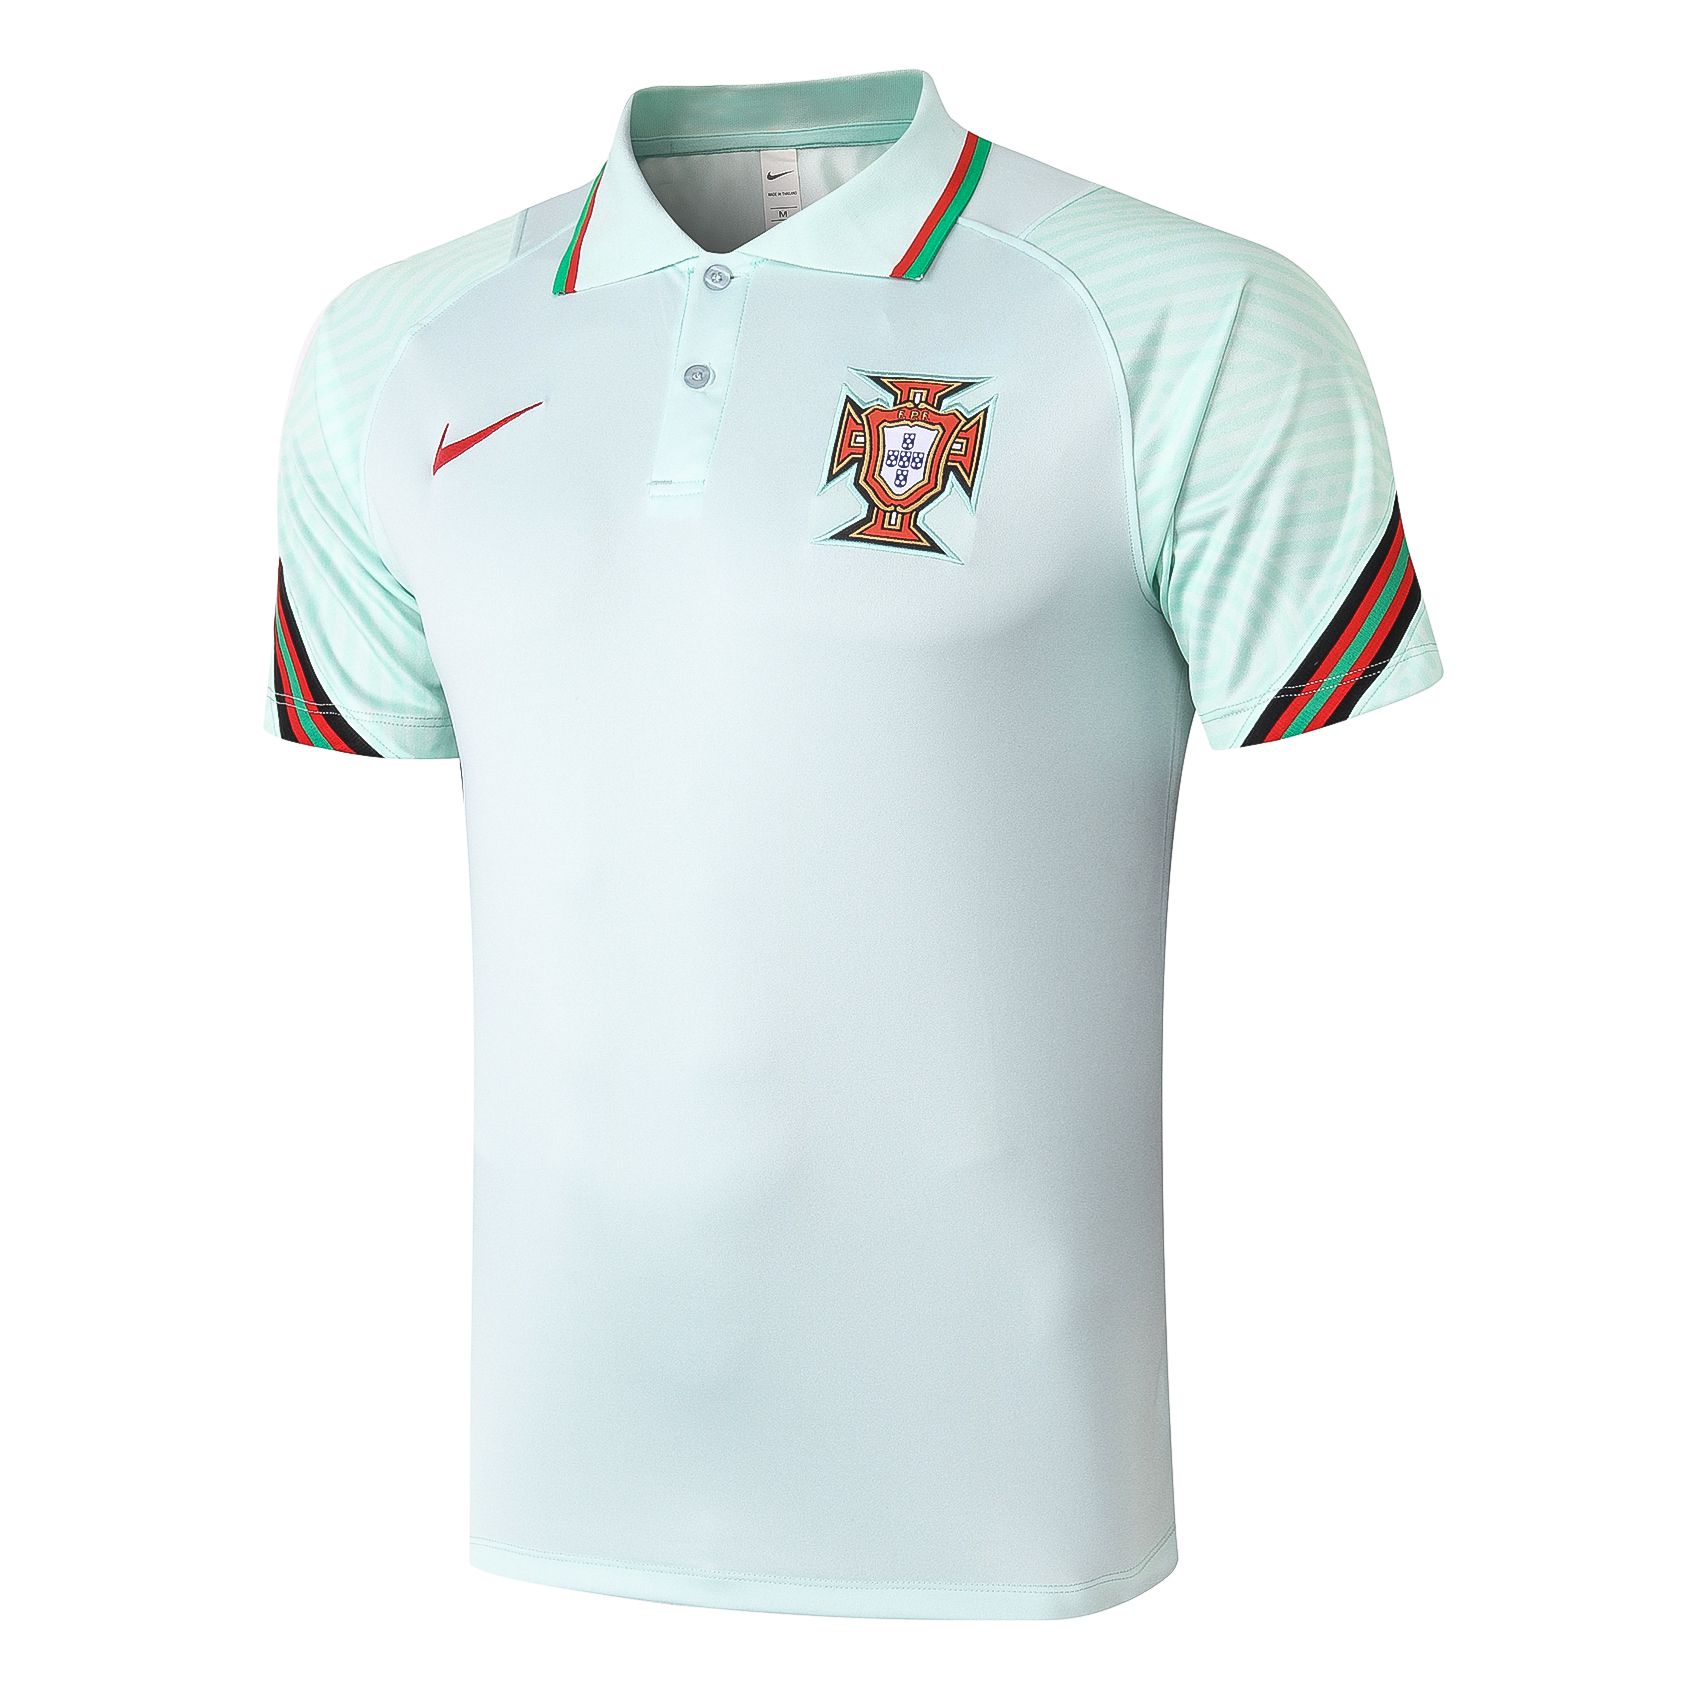 Camisa Polo Portugal - Green Day Sports | Artigos esportivos pertinho de  você